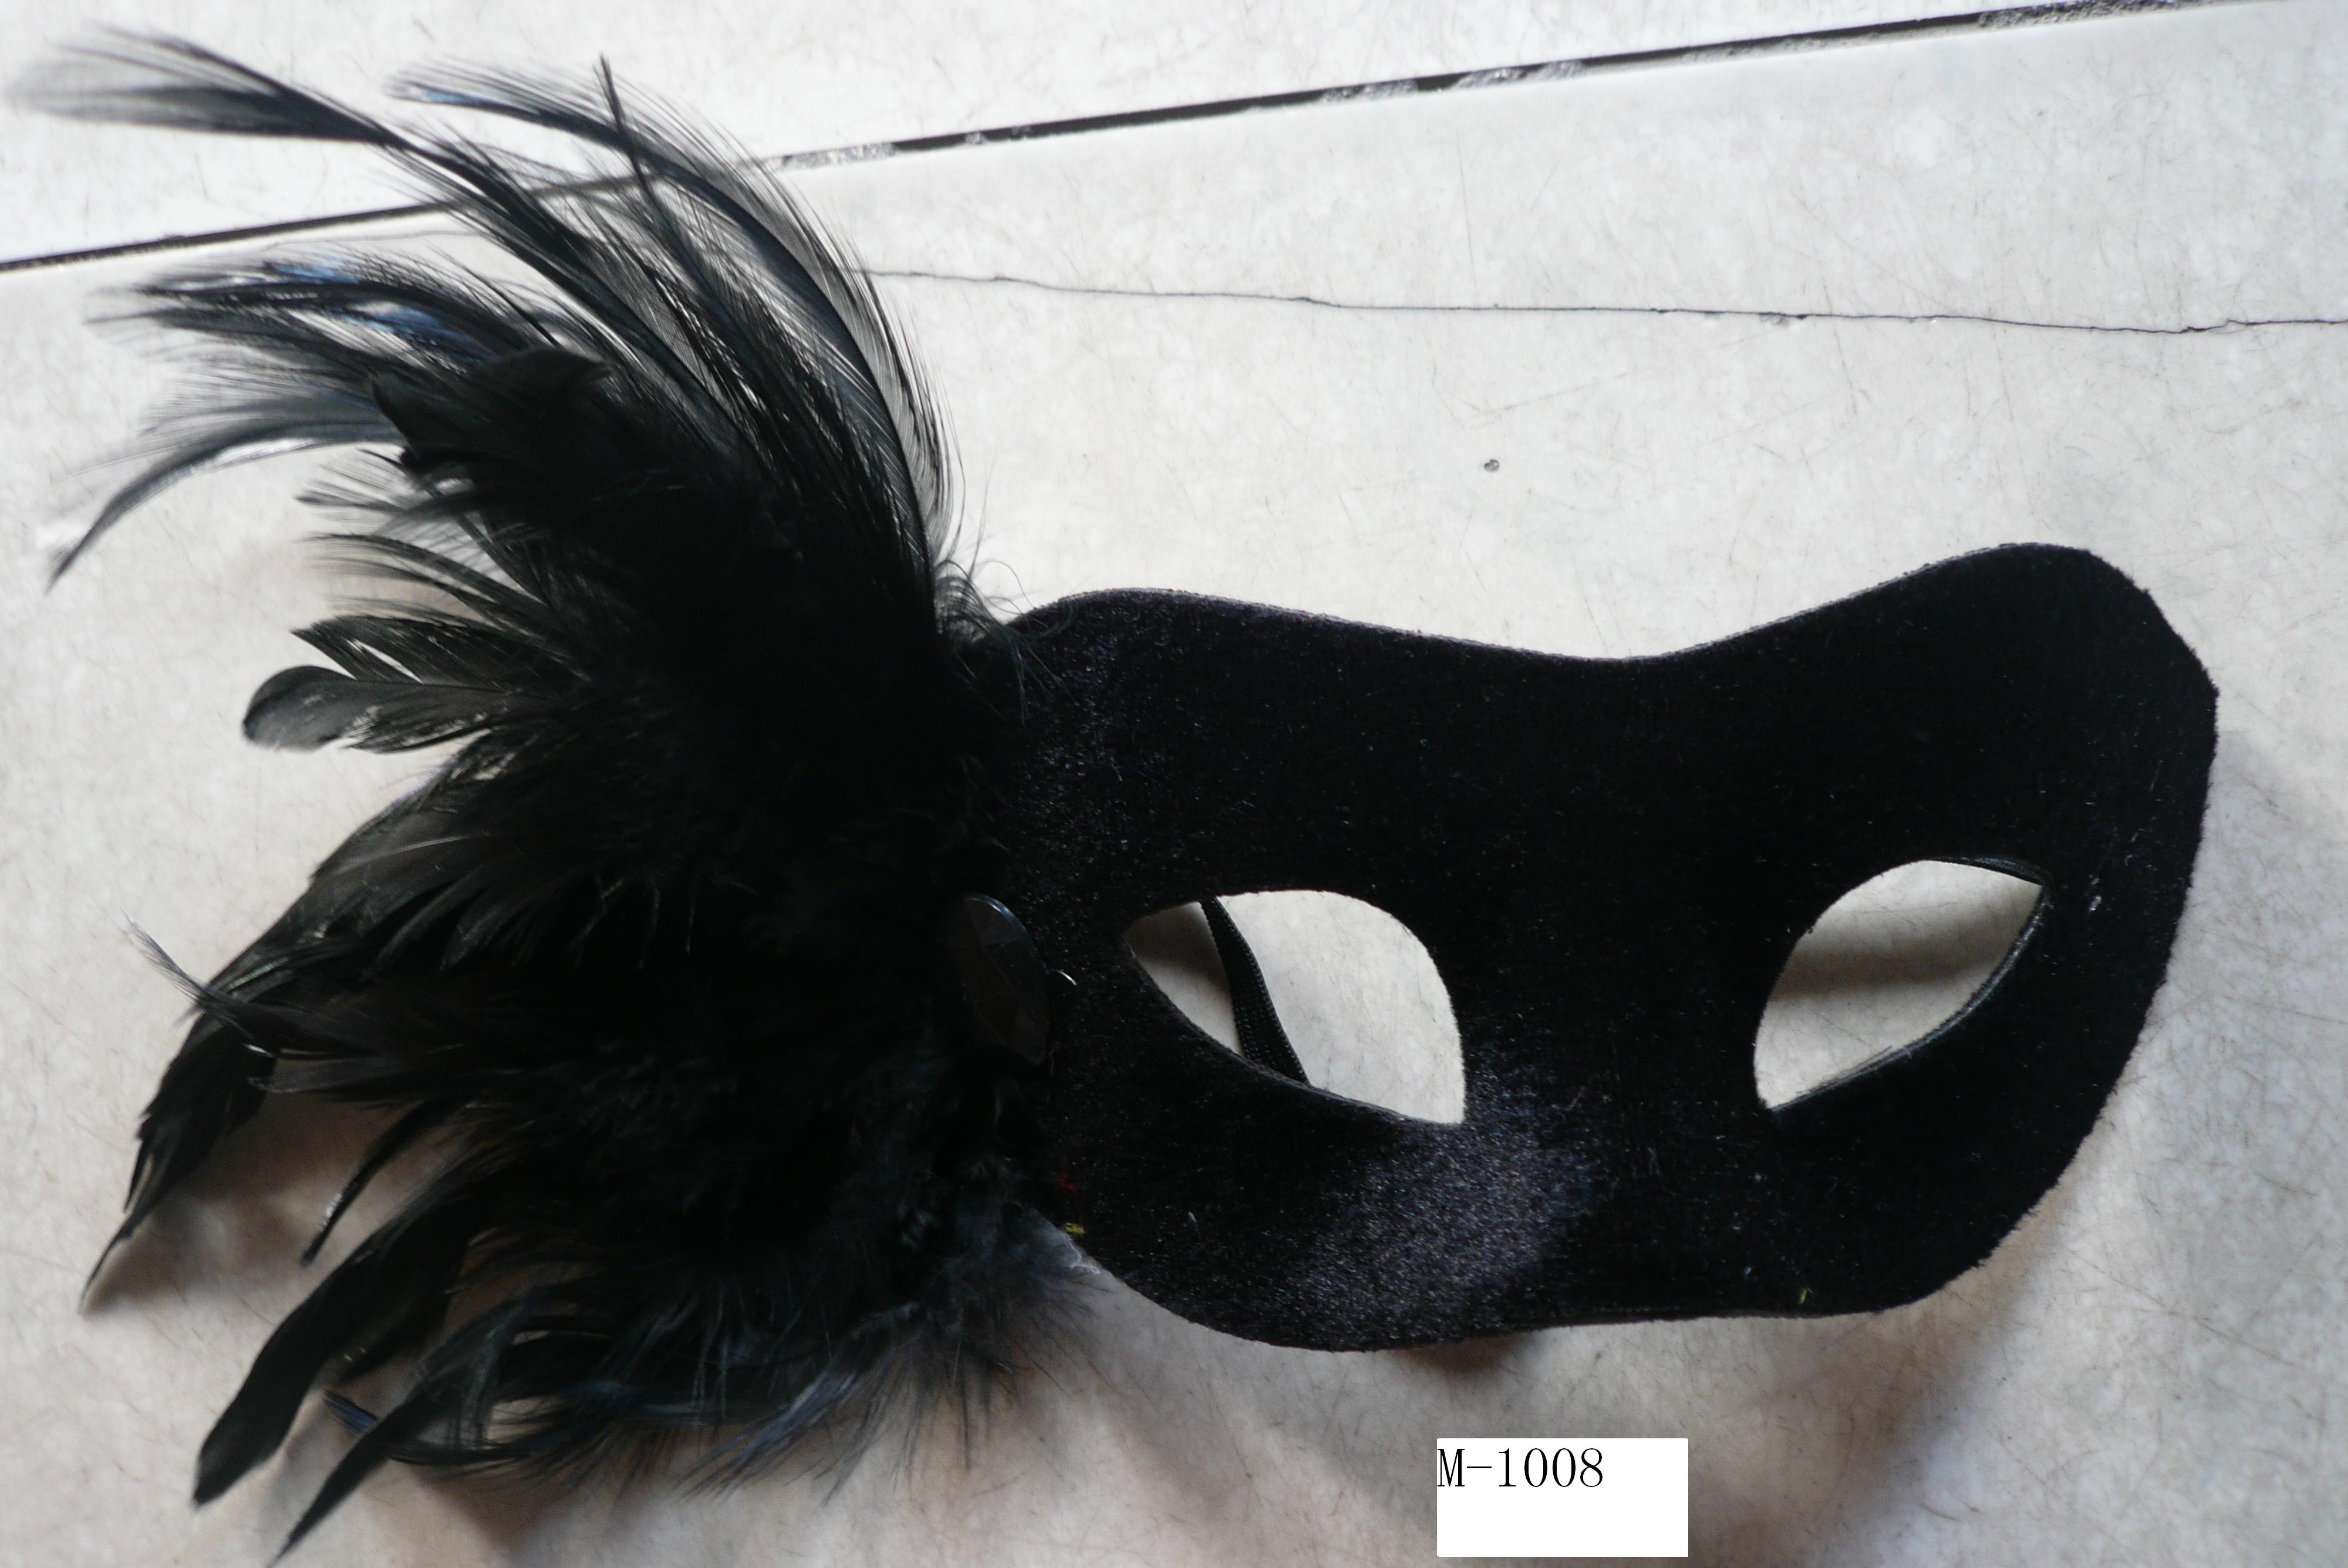  便宜的羽毛面具出售 - 中国制造 M-1008